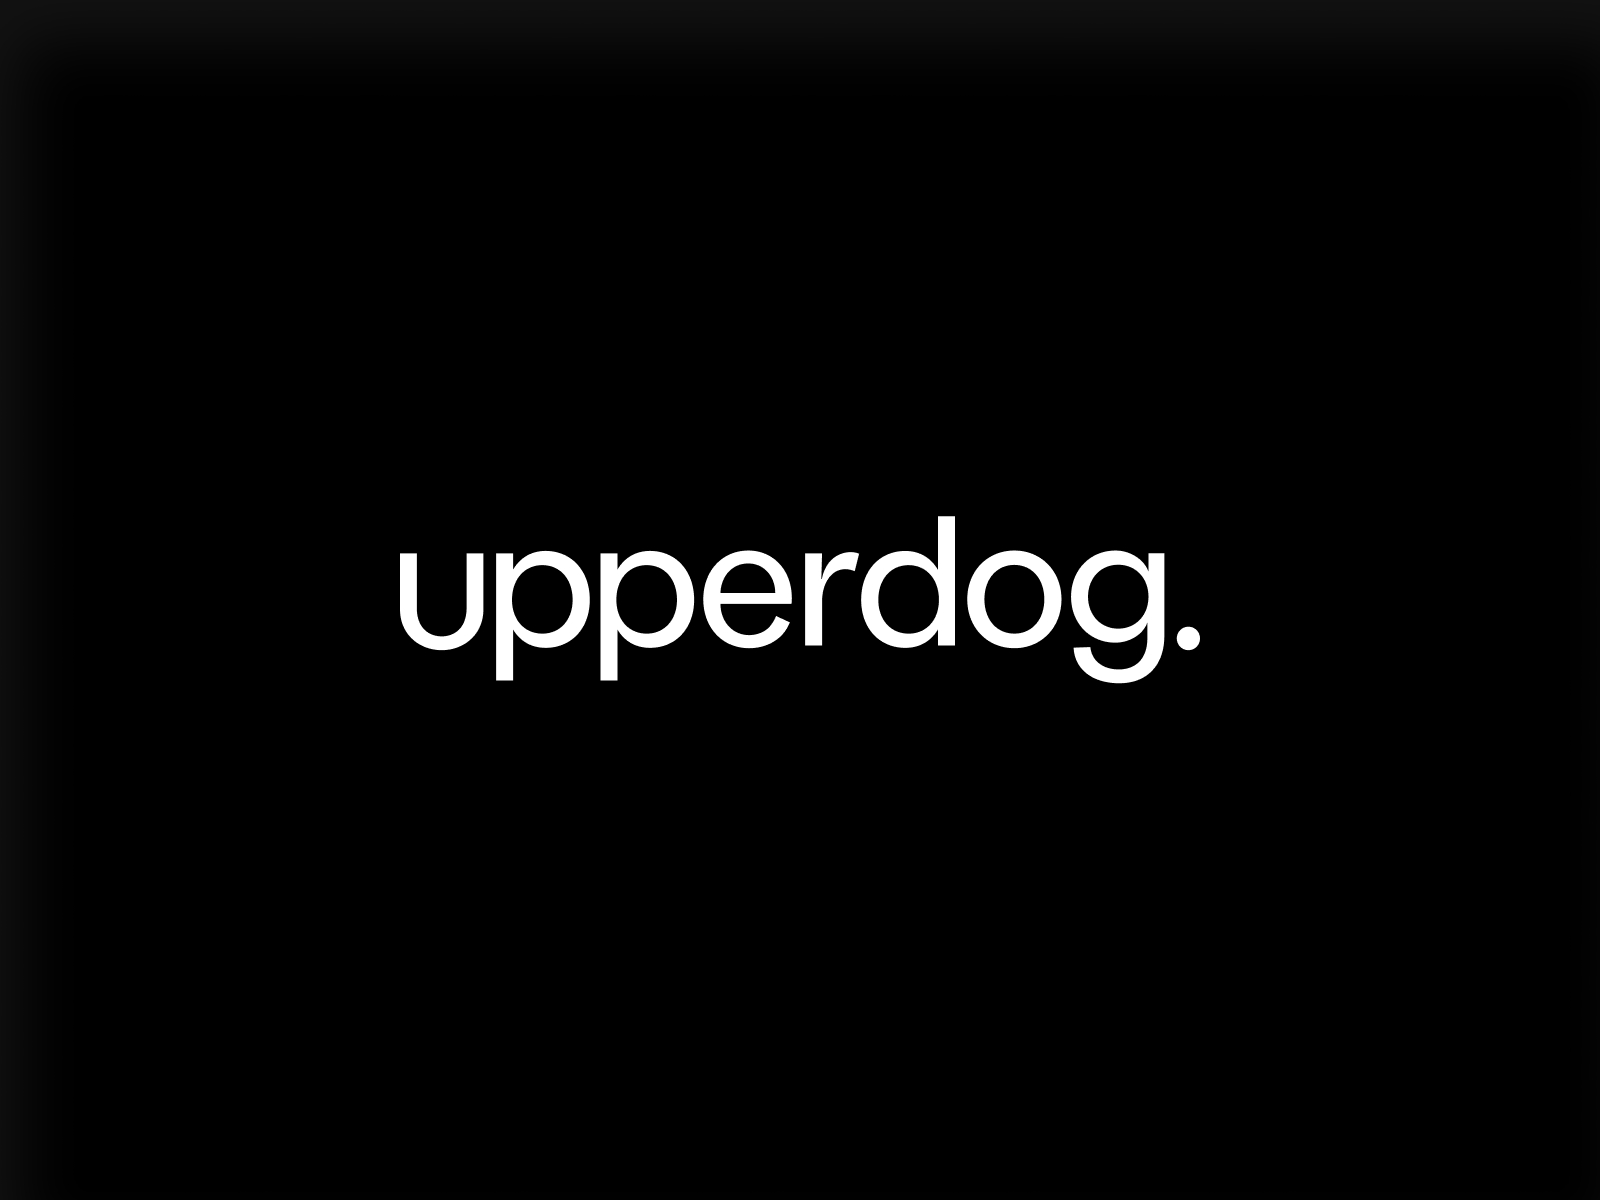 Upperdog